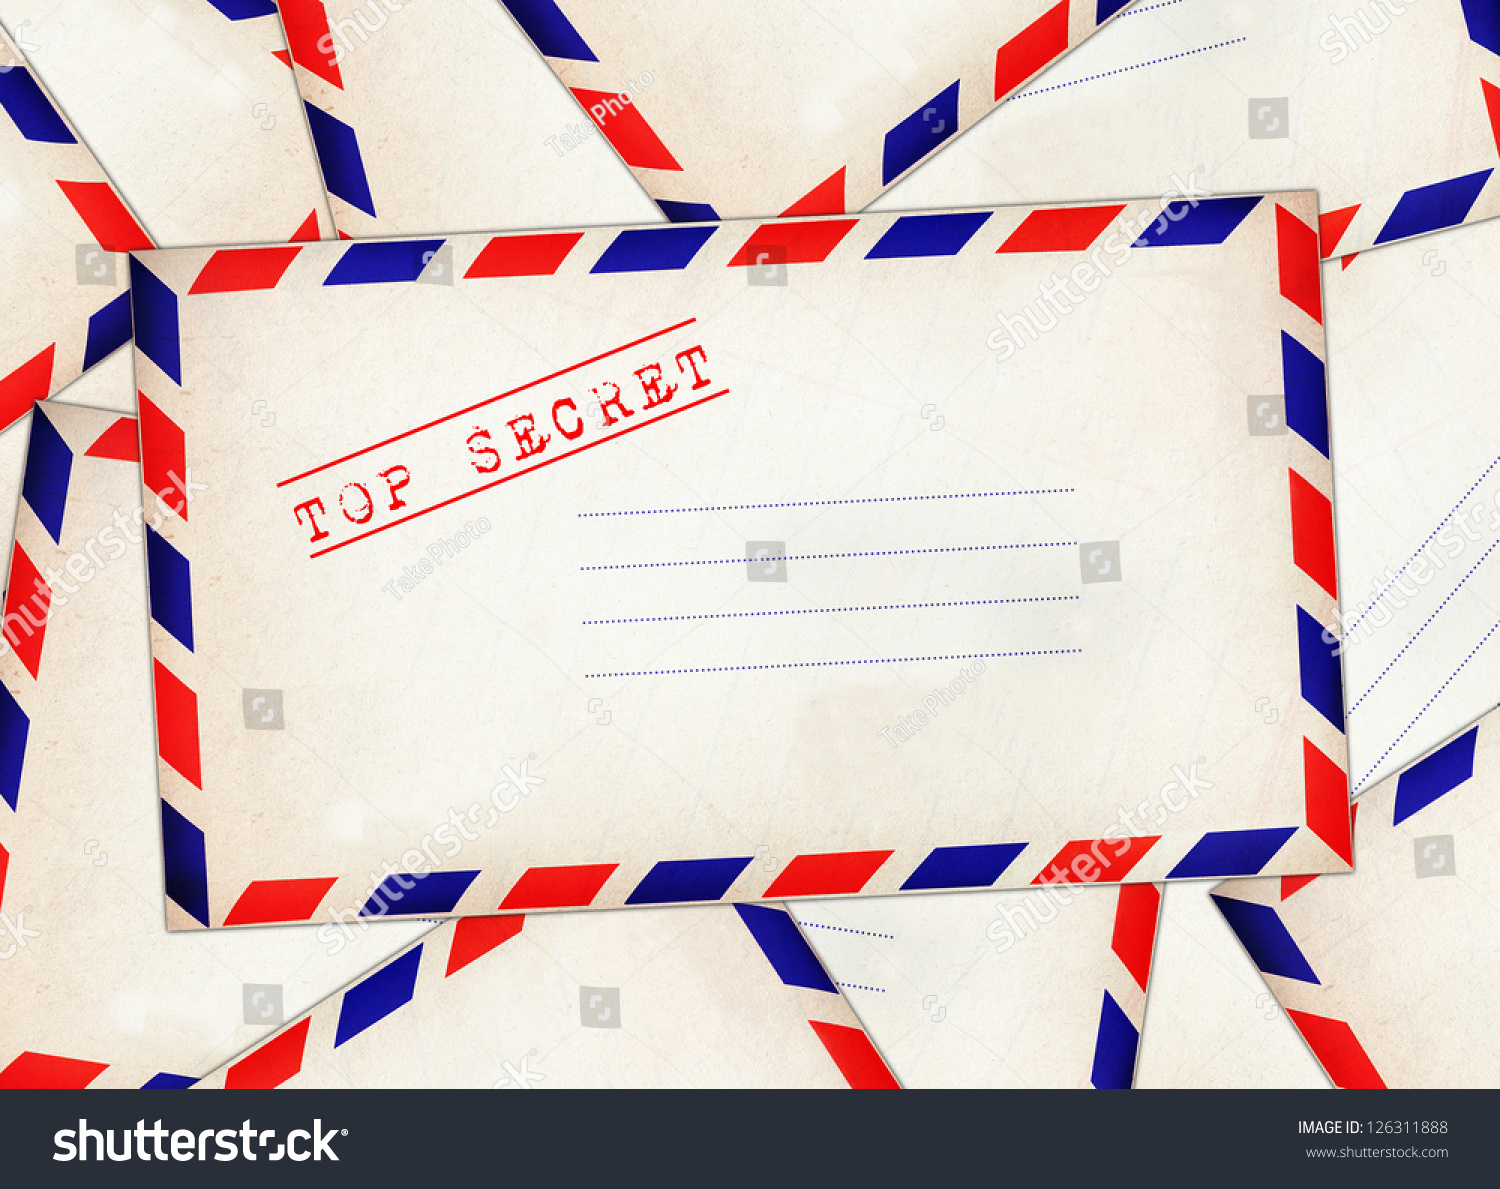 White Envelope Stamp Top Secret On Stock Photo 126311888 - Shutterstock